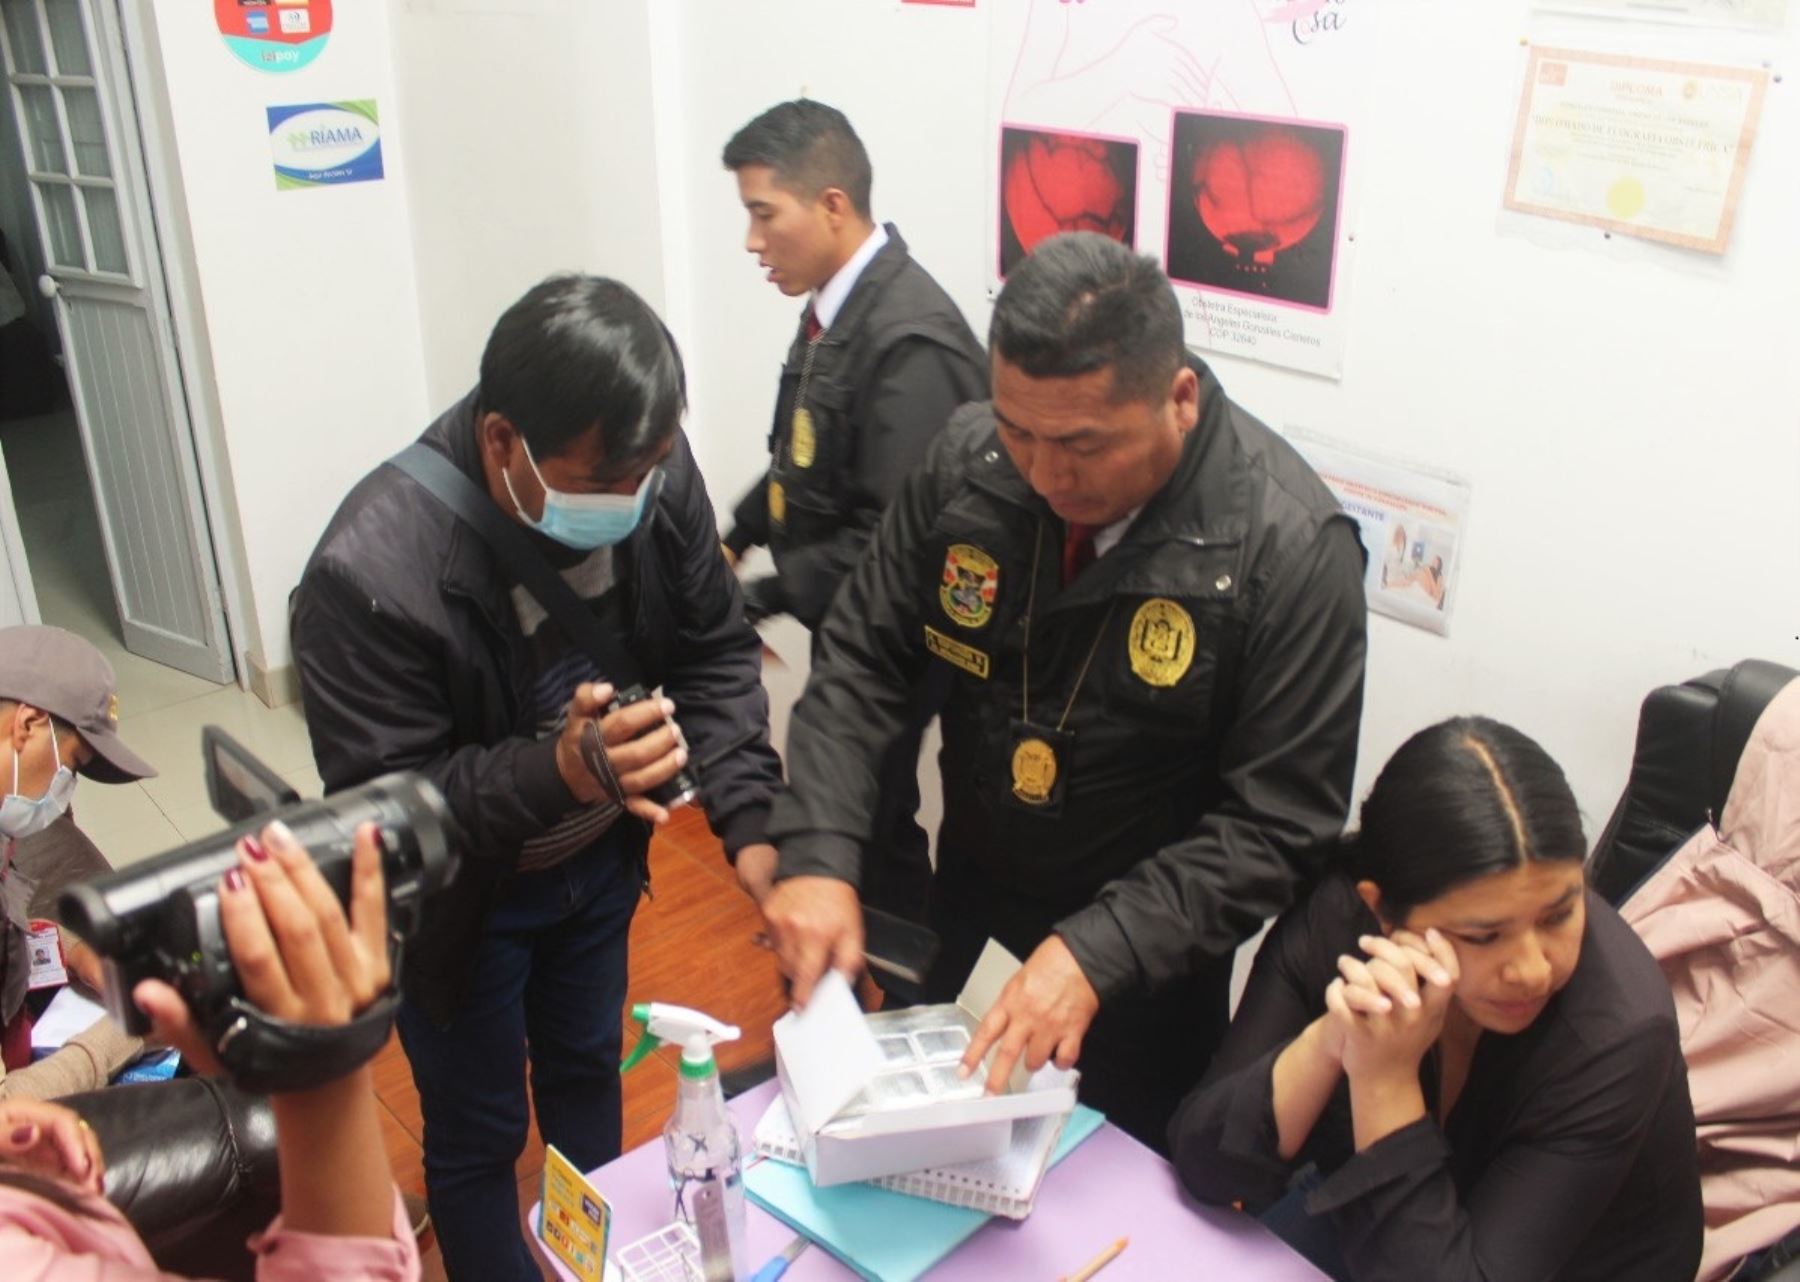 Ministerio Público y la Policía Nacional clausuraron cinco clínicas obstétricas y consultorios clandestinos que operaban en Cusco, tras el caso de una presunta red de tráfico de bebés. Foto cortesía: Alejandro Delgado T.